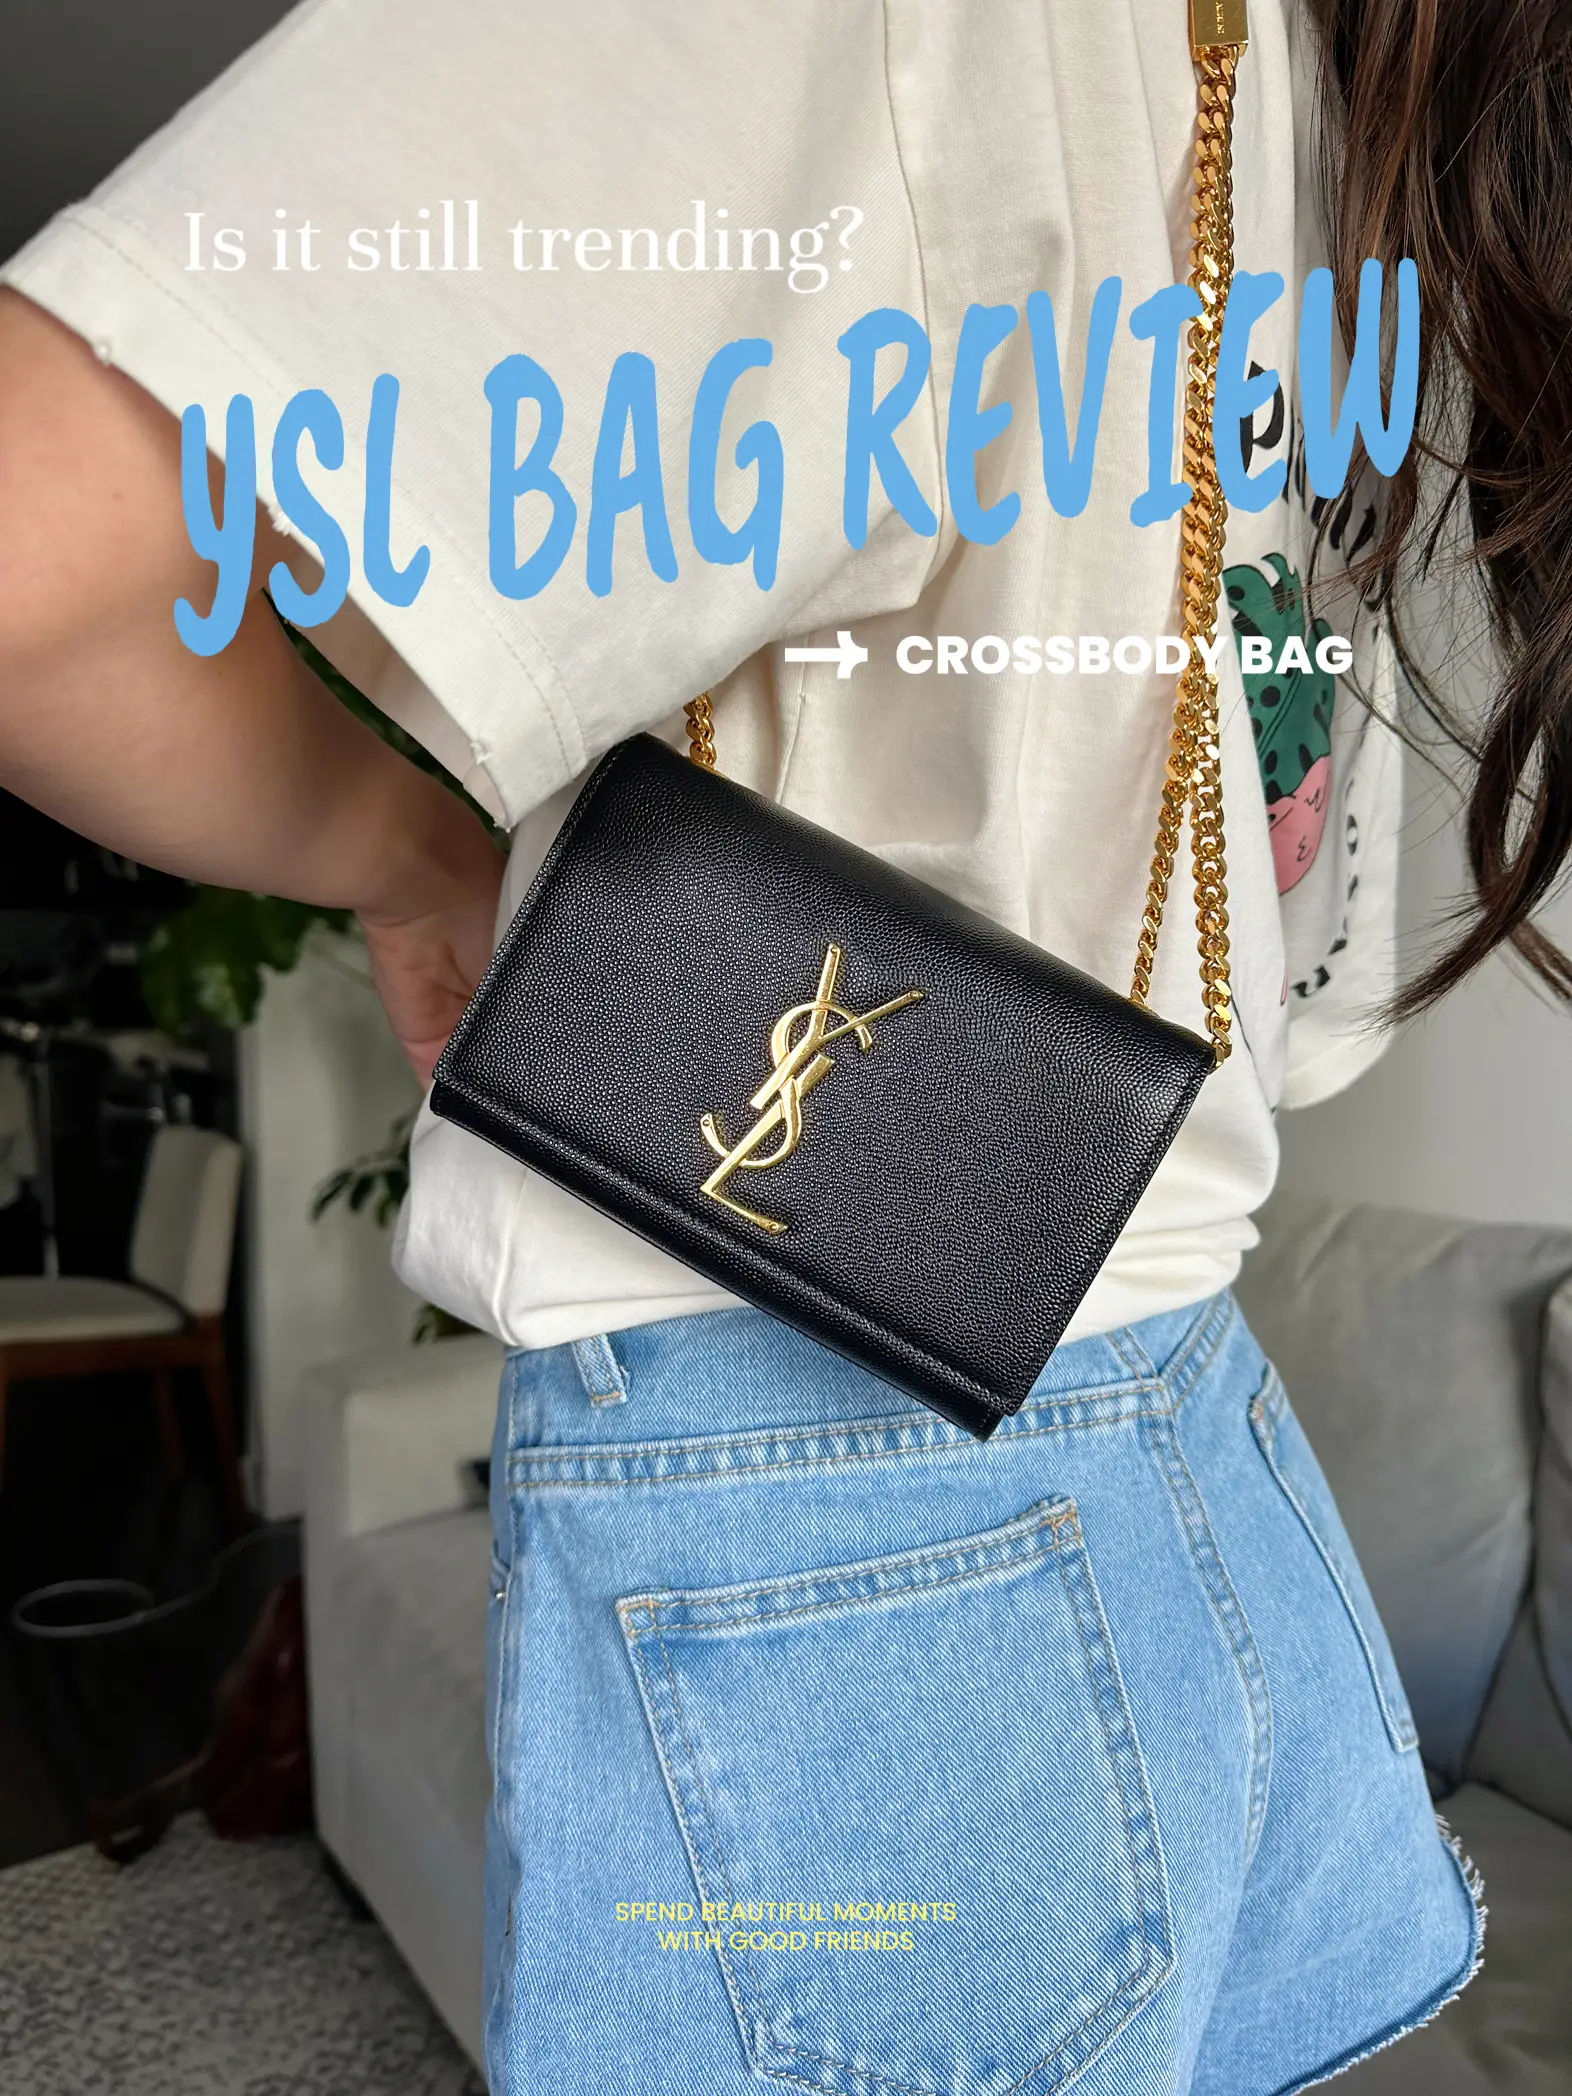 1) Thoughts on Saint Laurent YSL Envelope Bag?